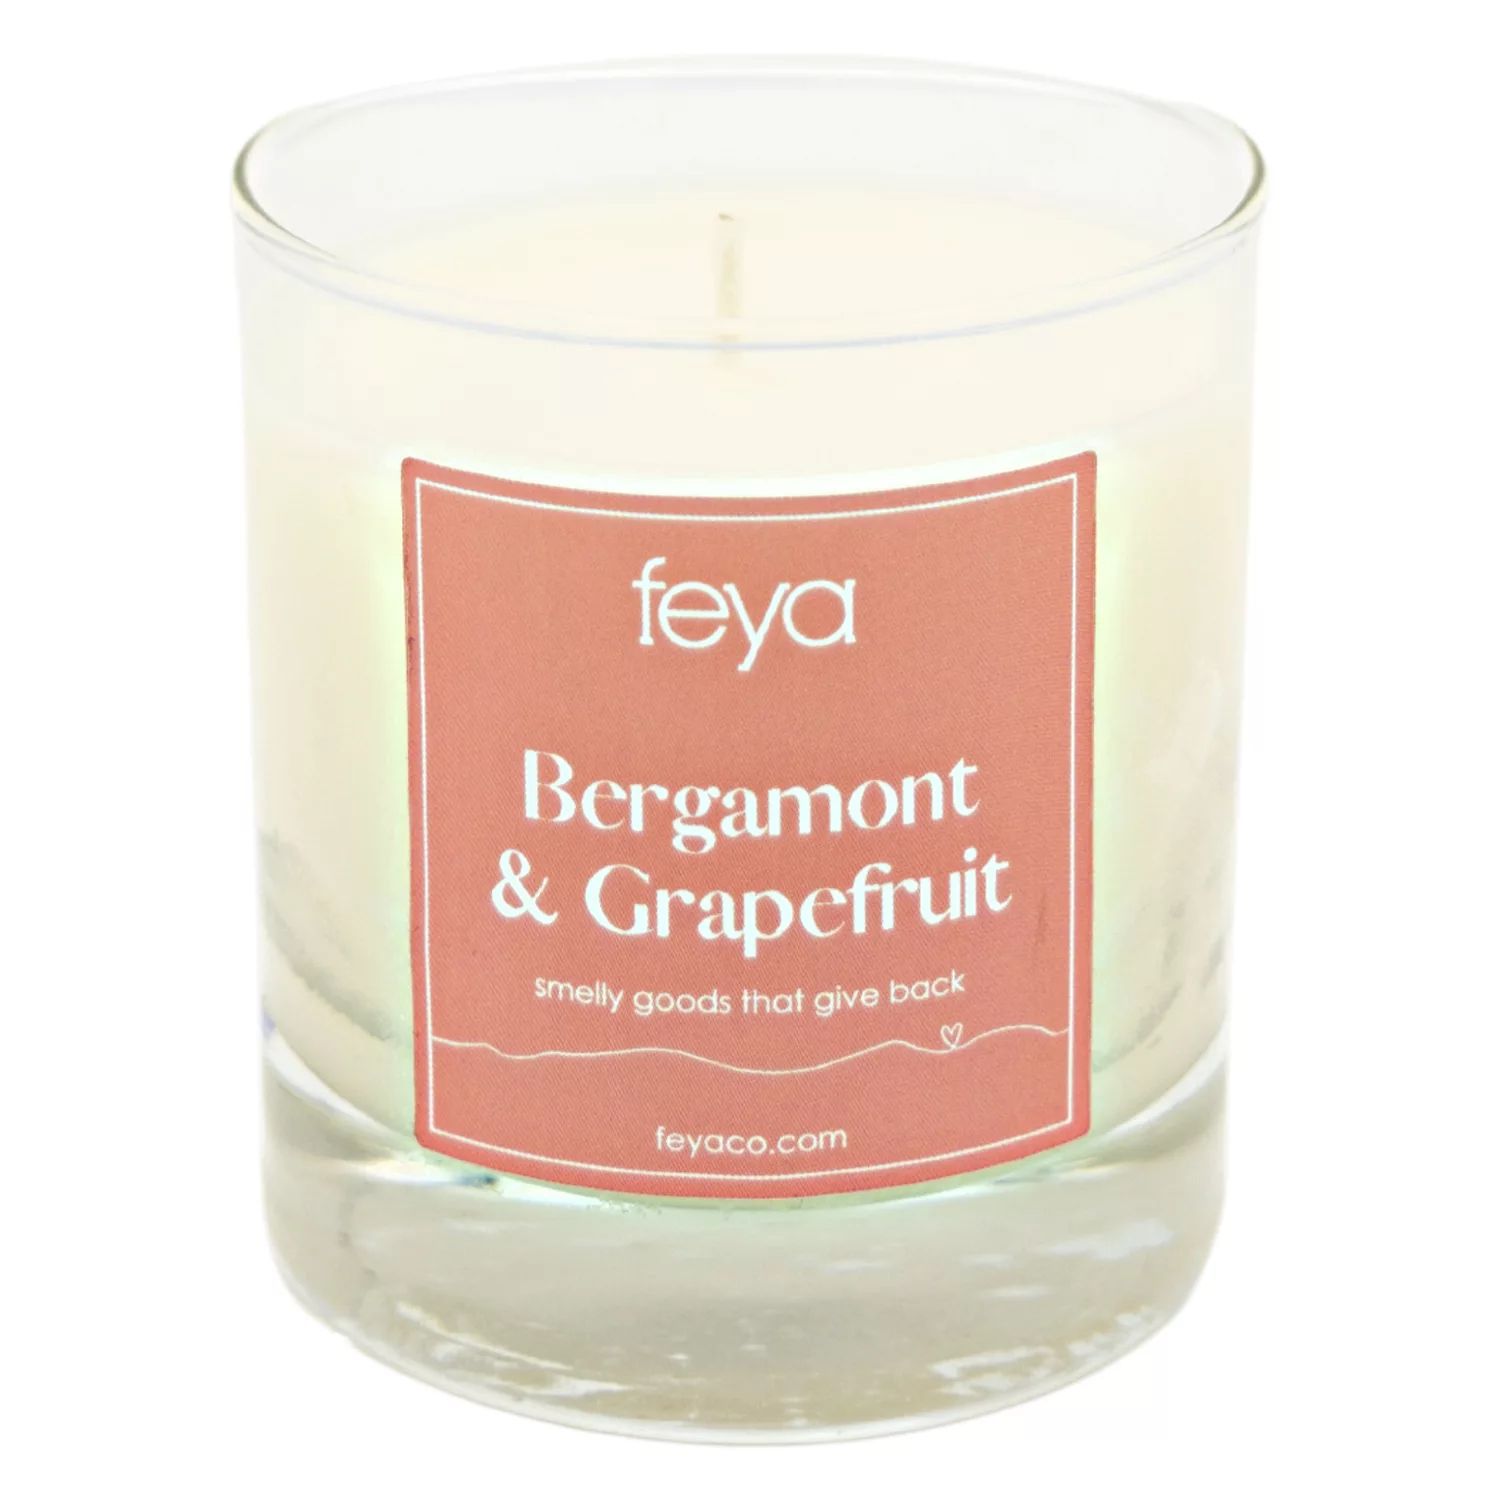 Свечи Feya с бергамотом и грейпфрутом, 6,5 унций. Соевая свеча свеча feya черный дуб смородина 5 унций рид диффузор